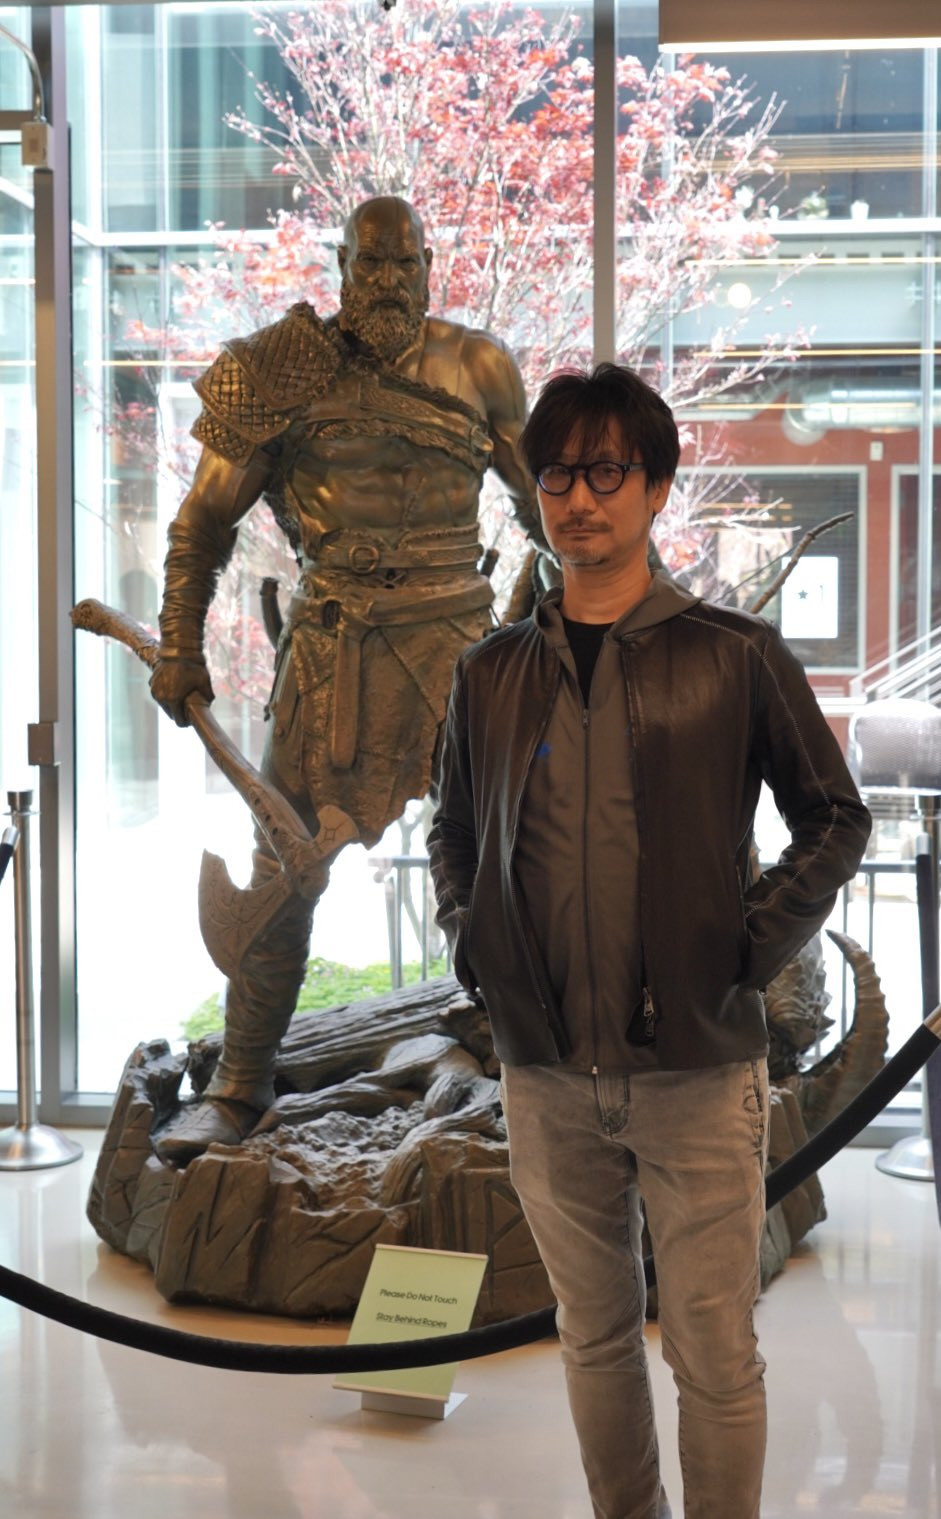 Галерея Эль Фаннинг, разработка Death Stranding 2 и God of War на свежих фото Хидео Кодзимы - 2 фото